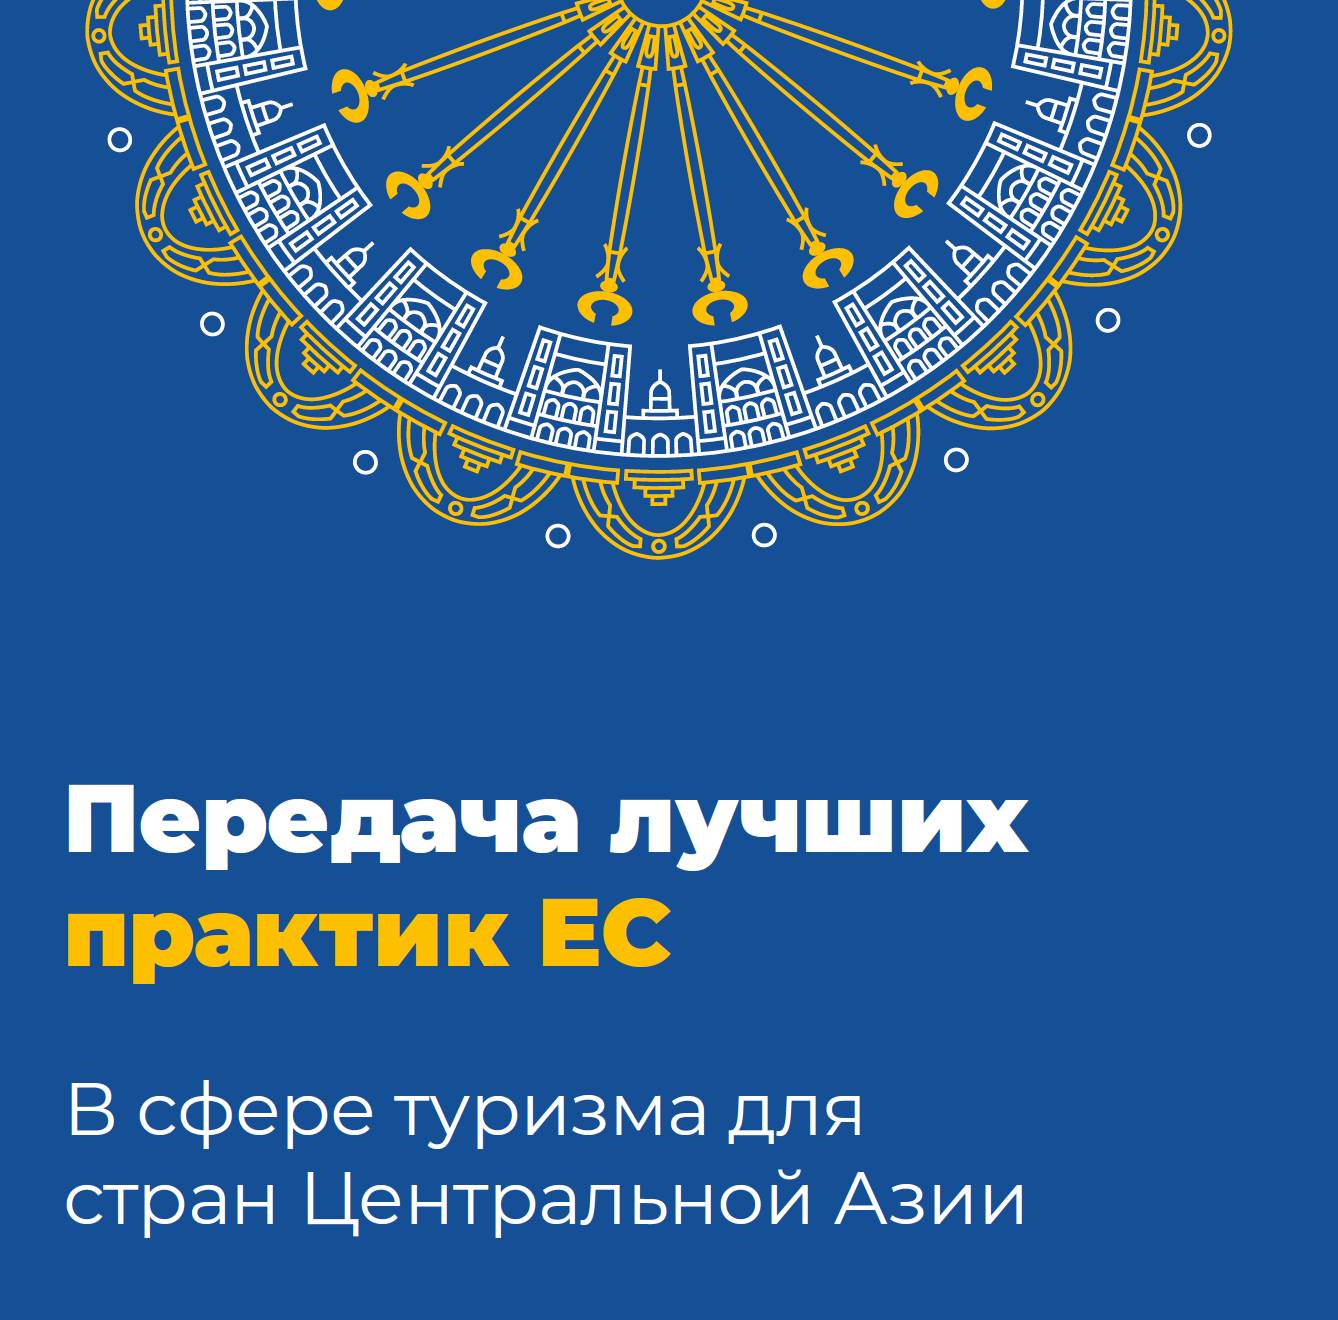 Передача лучших практик ЕС B сфере туризма для стран Центральной Азии